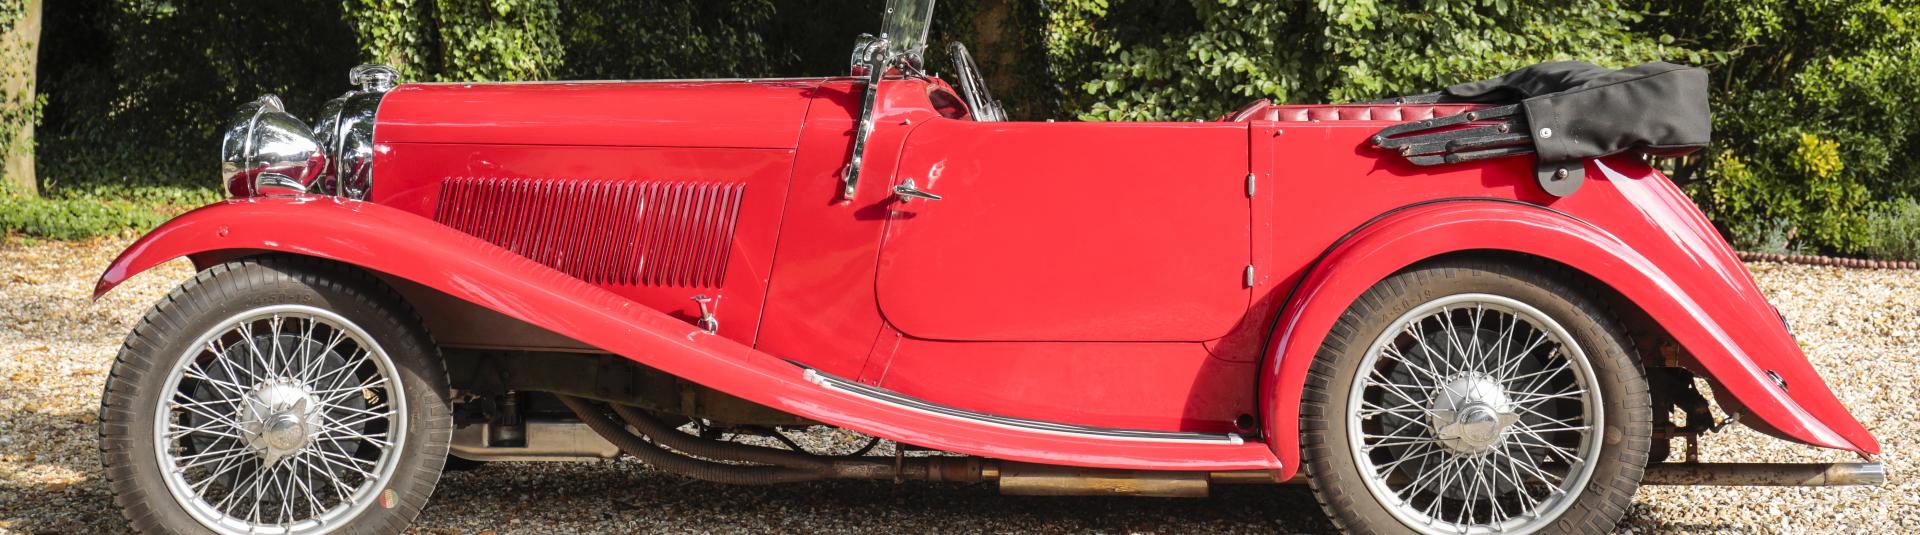 Lagonda Rapier Classic Cars